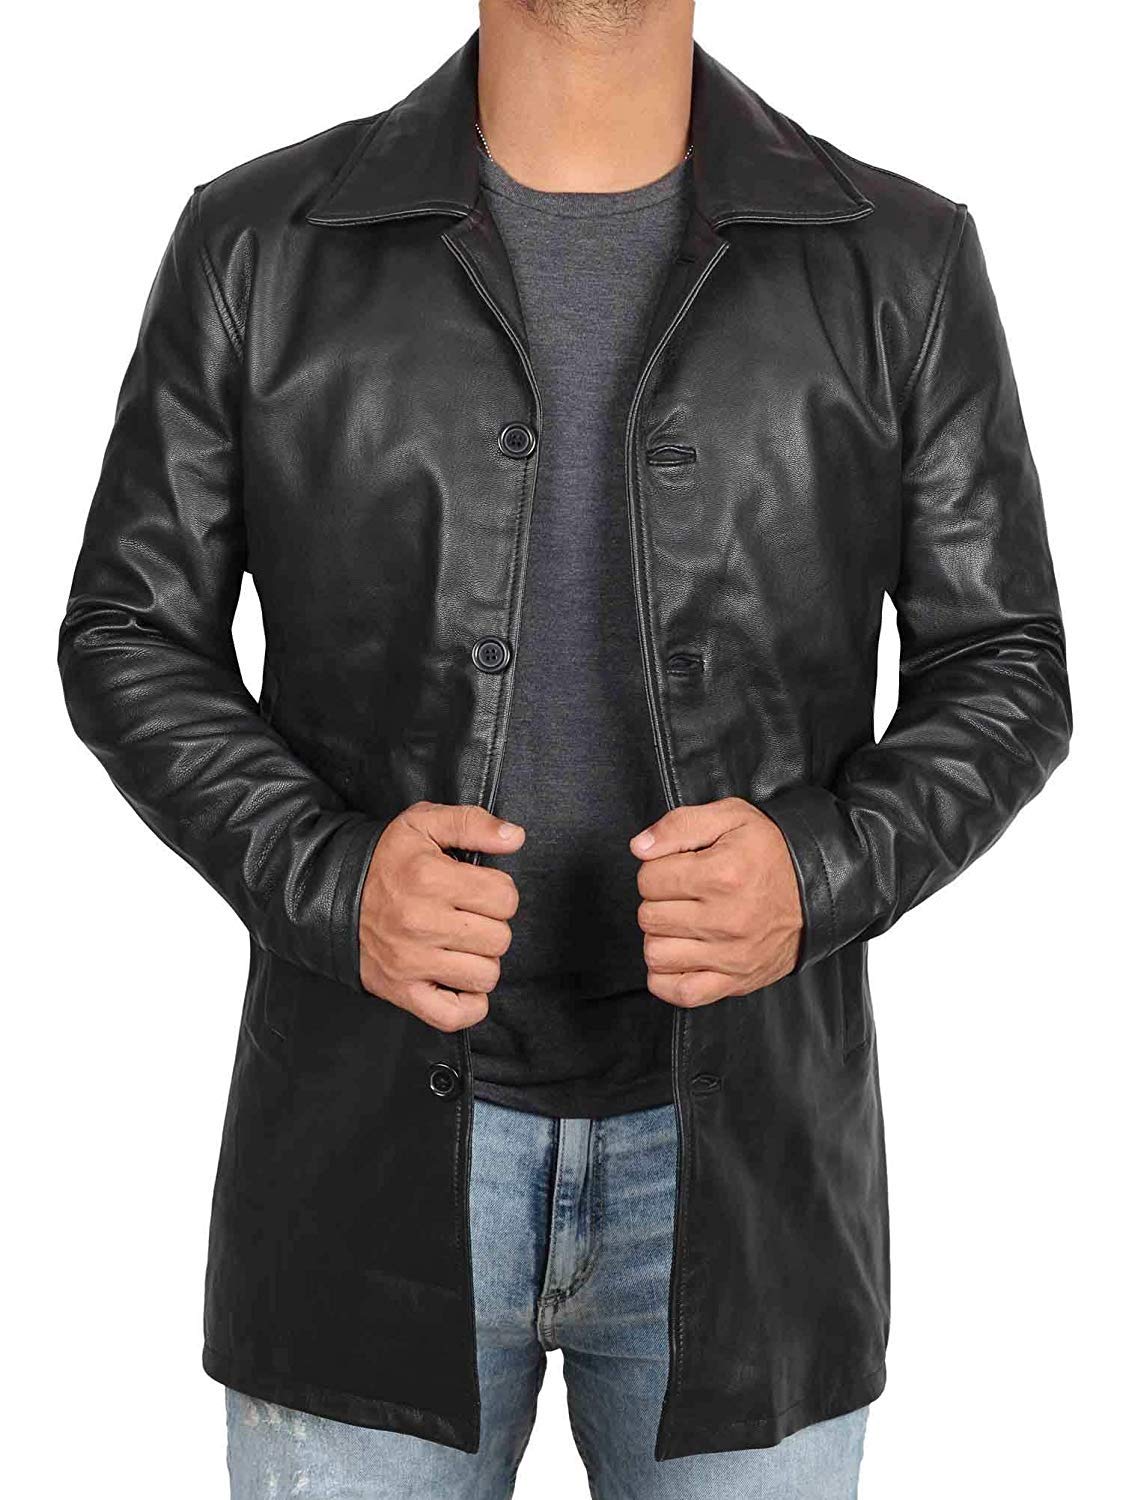 Blingsoul Leather Coats for Men - Vintage Style Long Leather Jacket Men